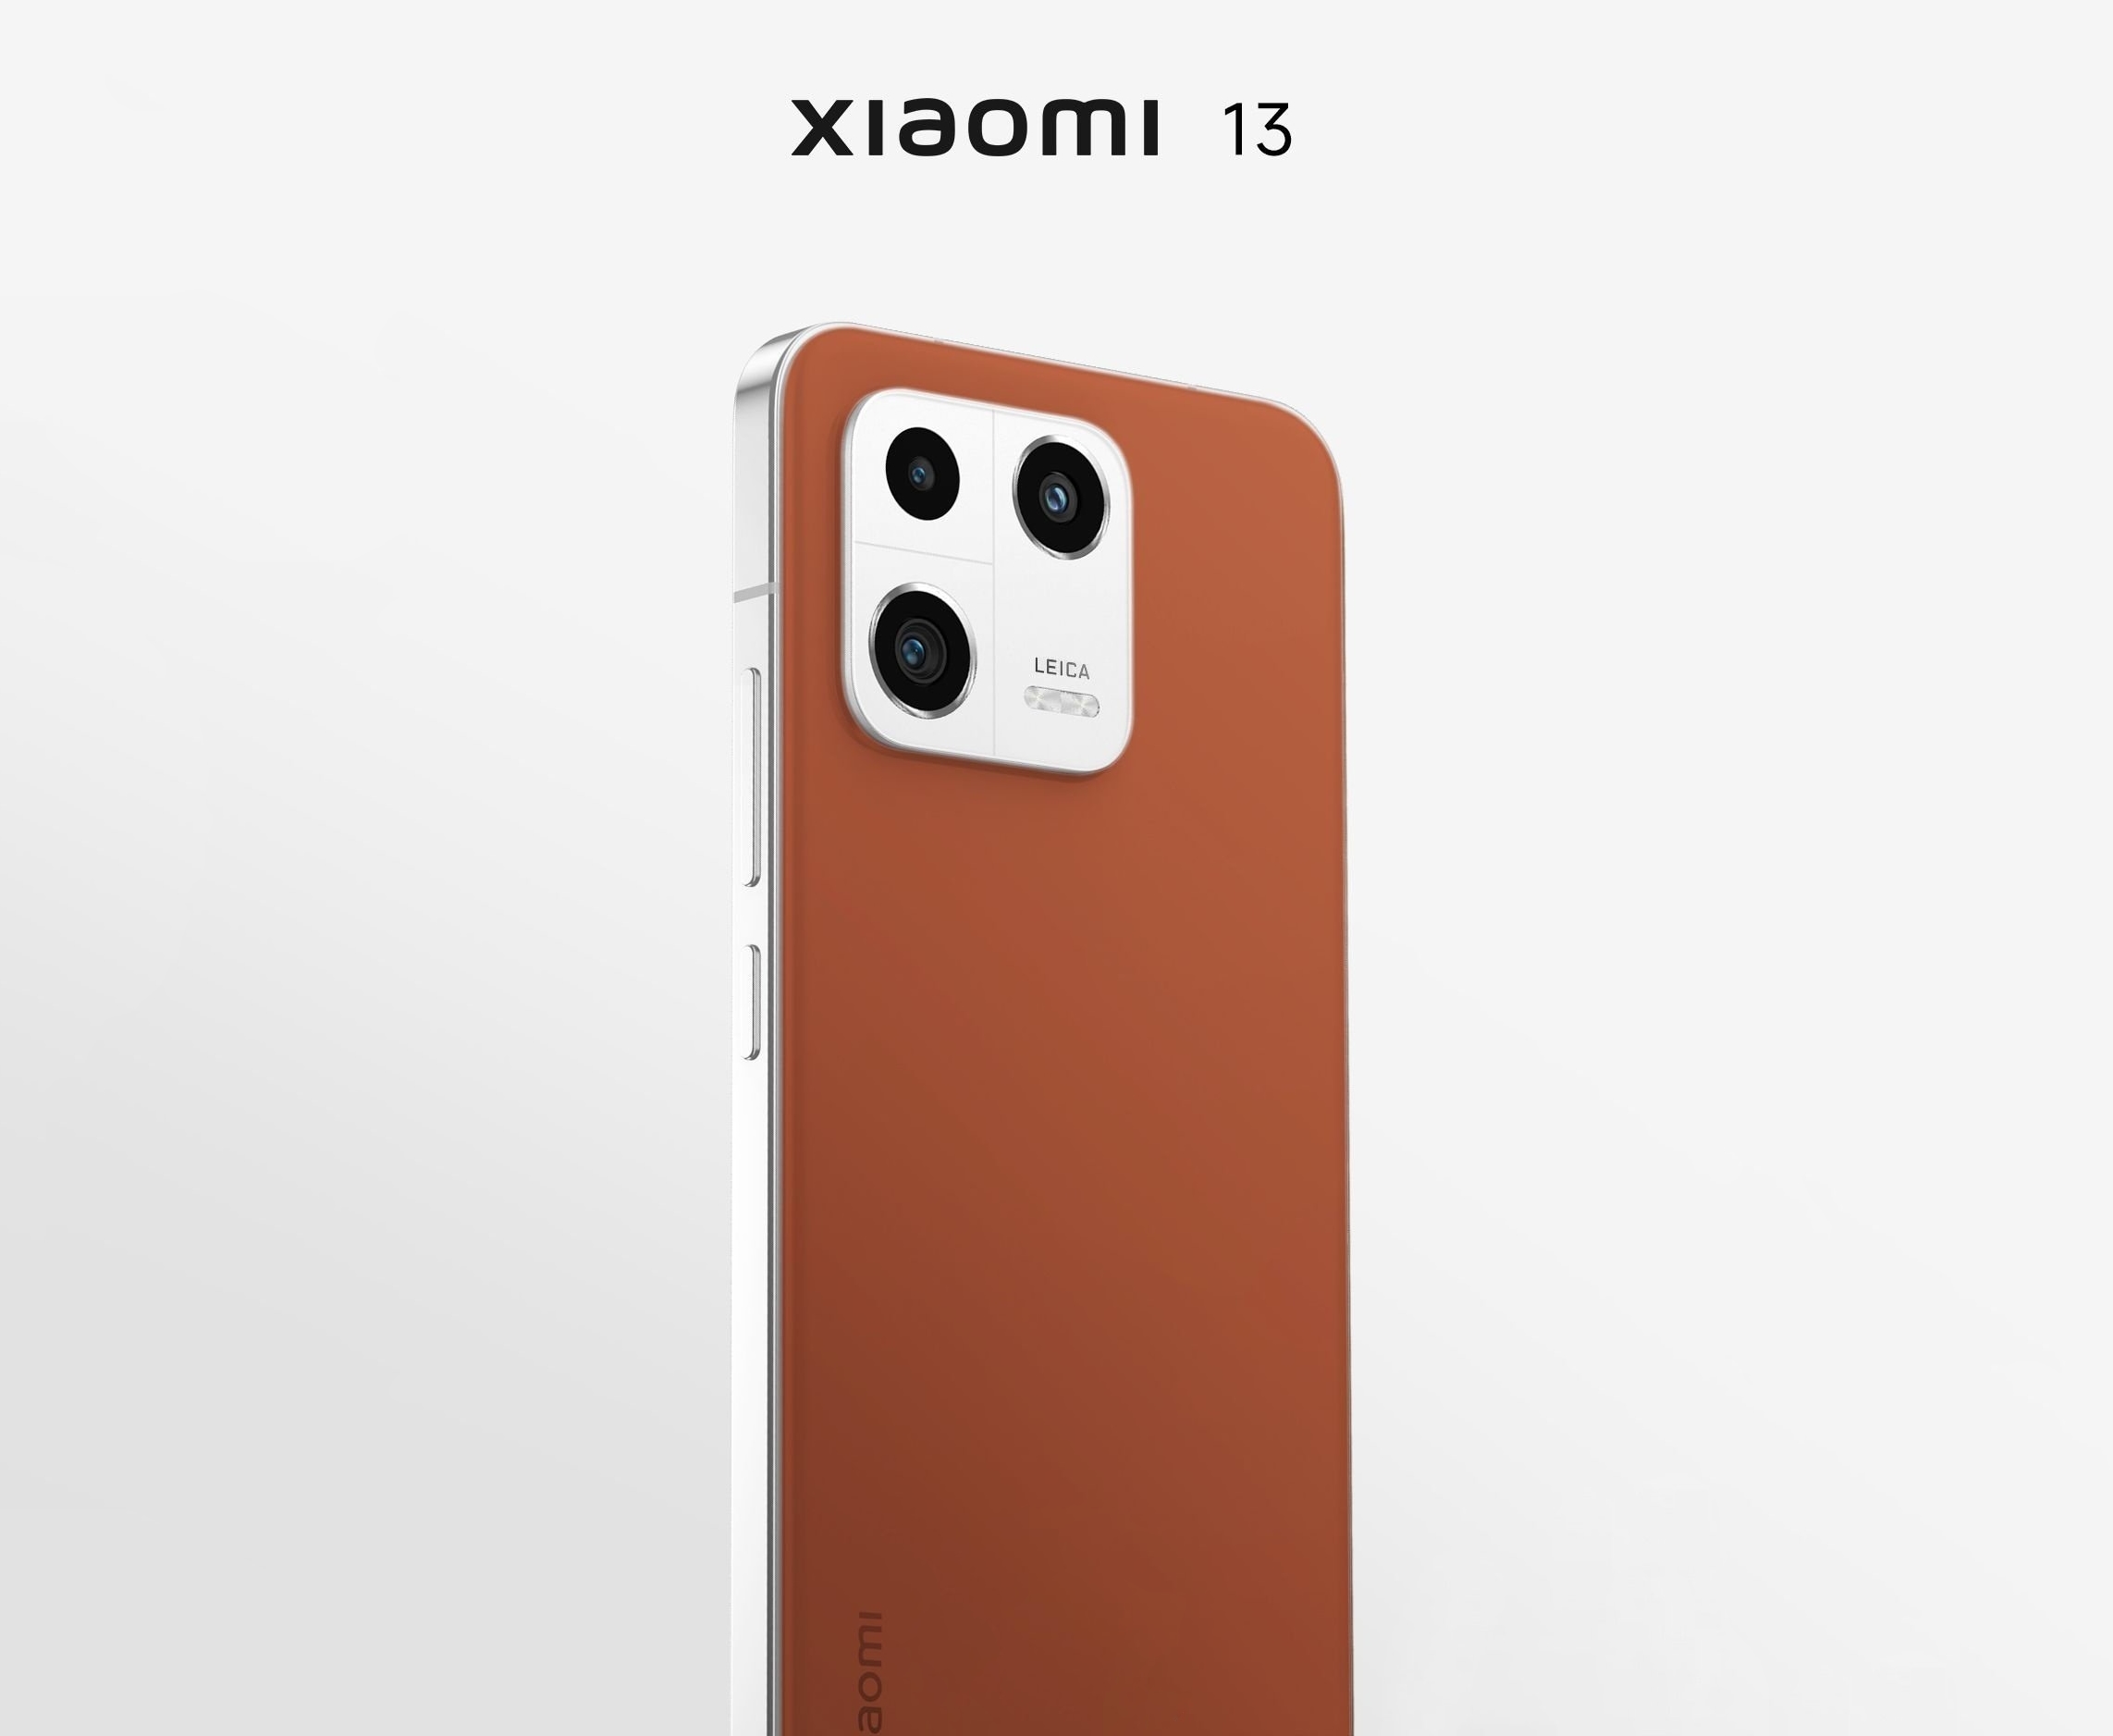 Xiaomi 13 è apparso sul rendering di qualità: uno smartphone con una tripla fotocamera Leica e un pannello posteriore in pelle